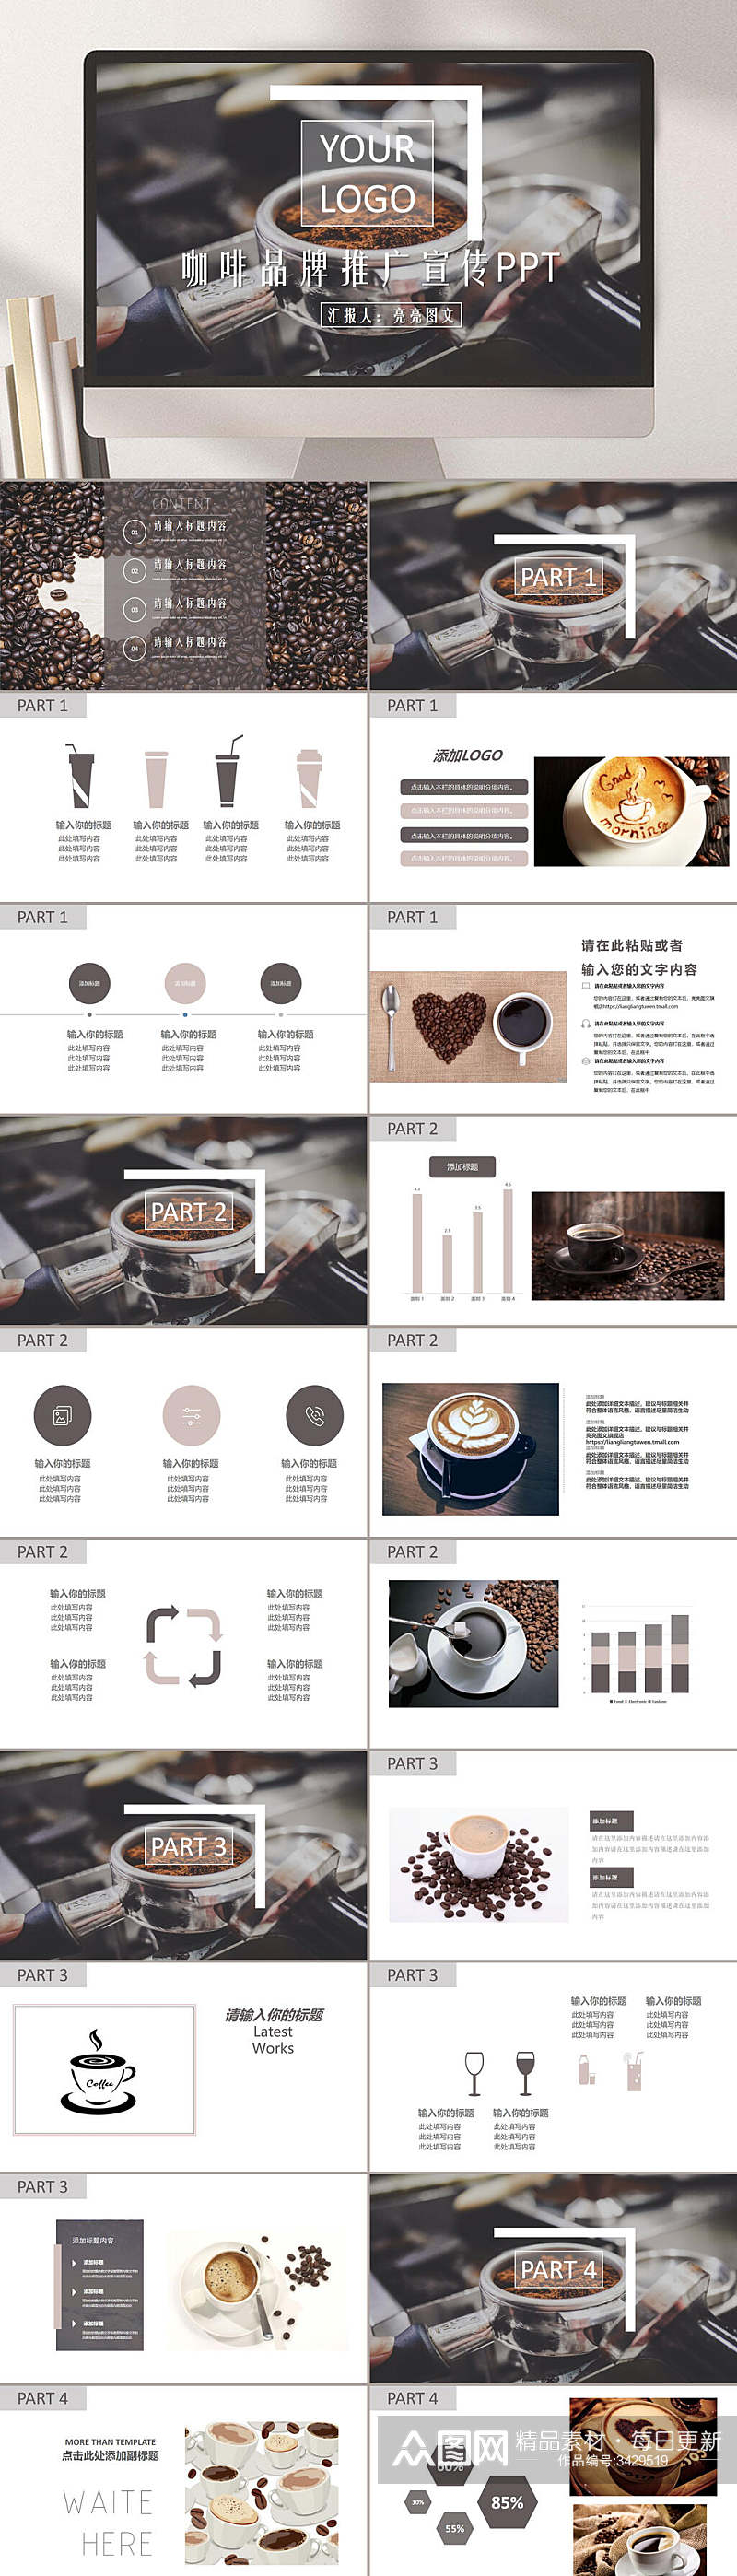 咖啡品牌推广宣传咖啡行业PPT素材